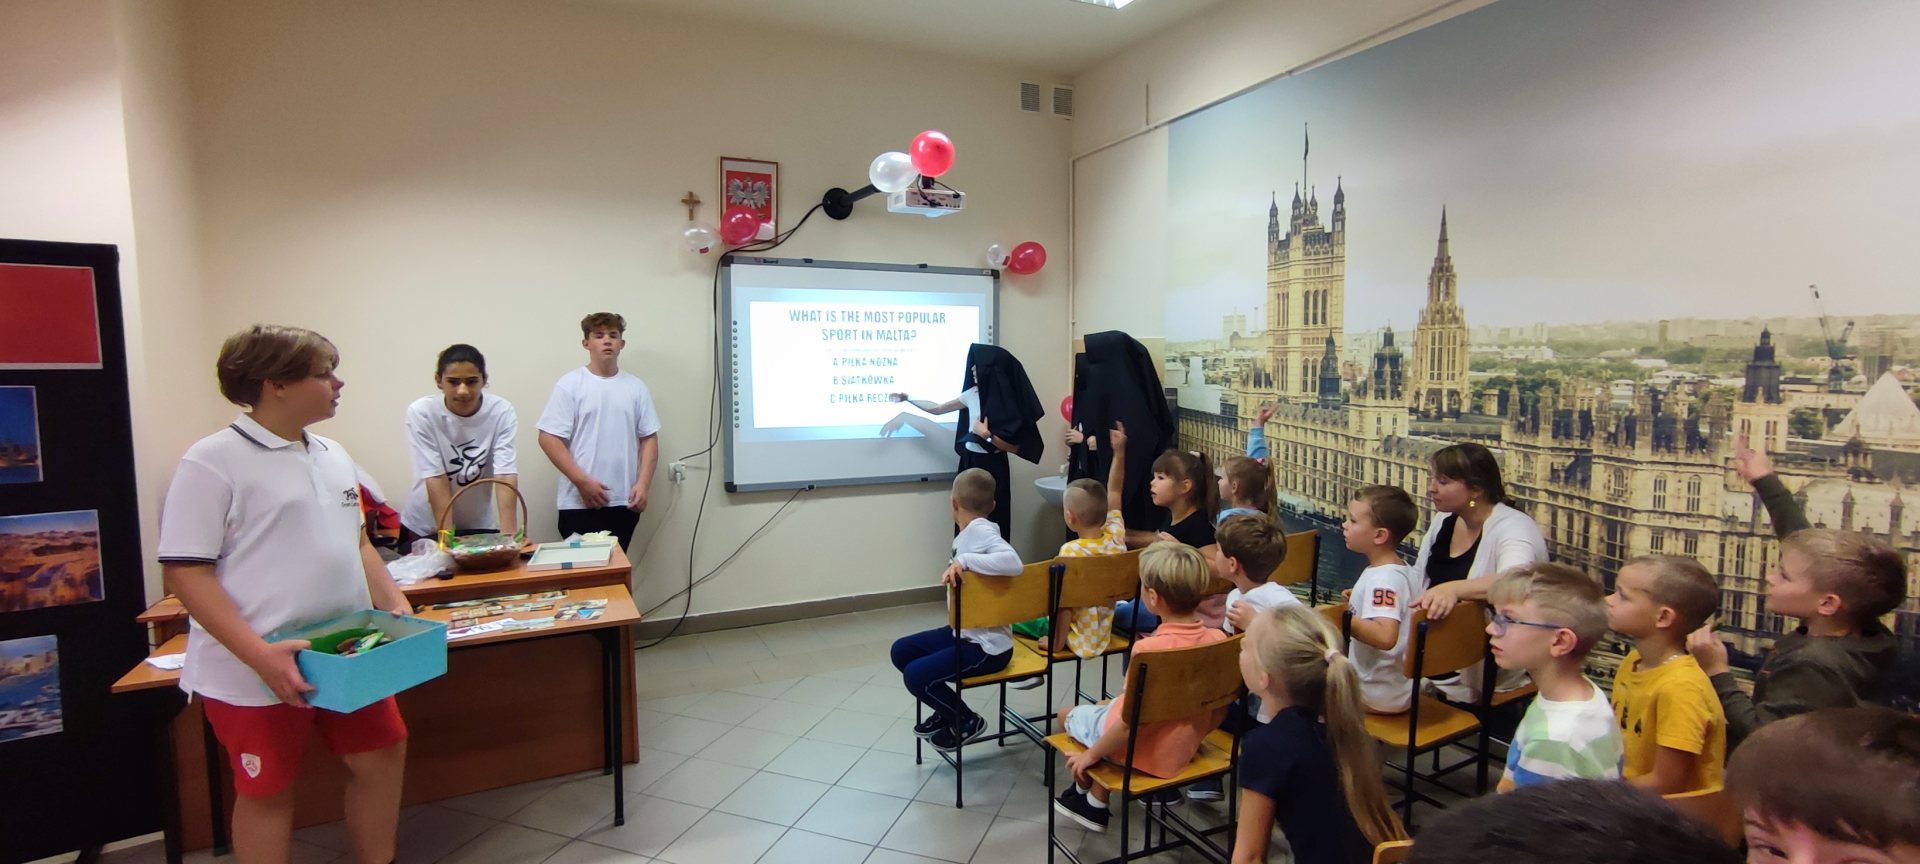 Uczniowie przeprowadzą quiz o Malcie